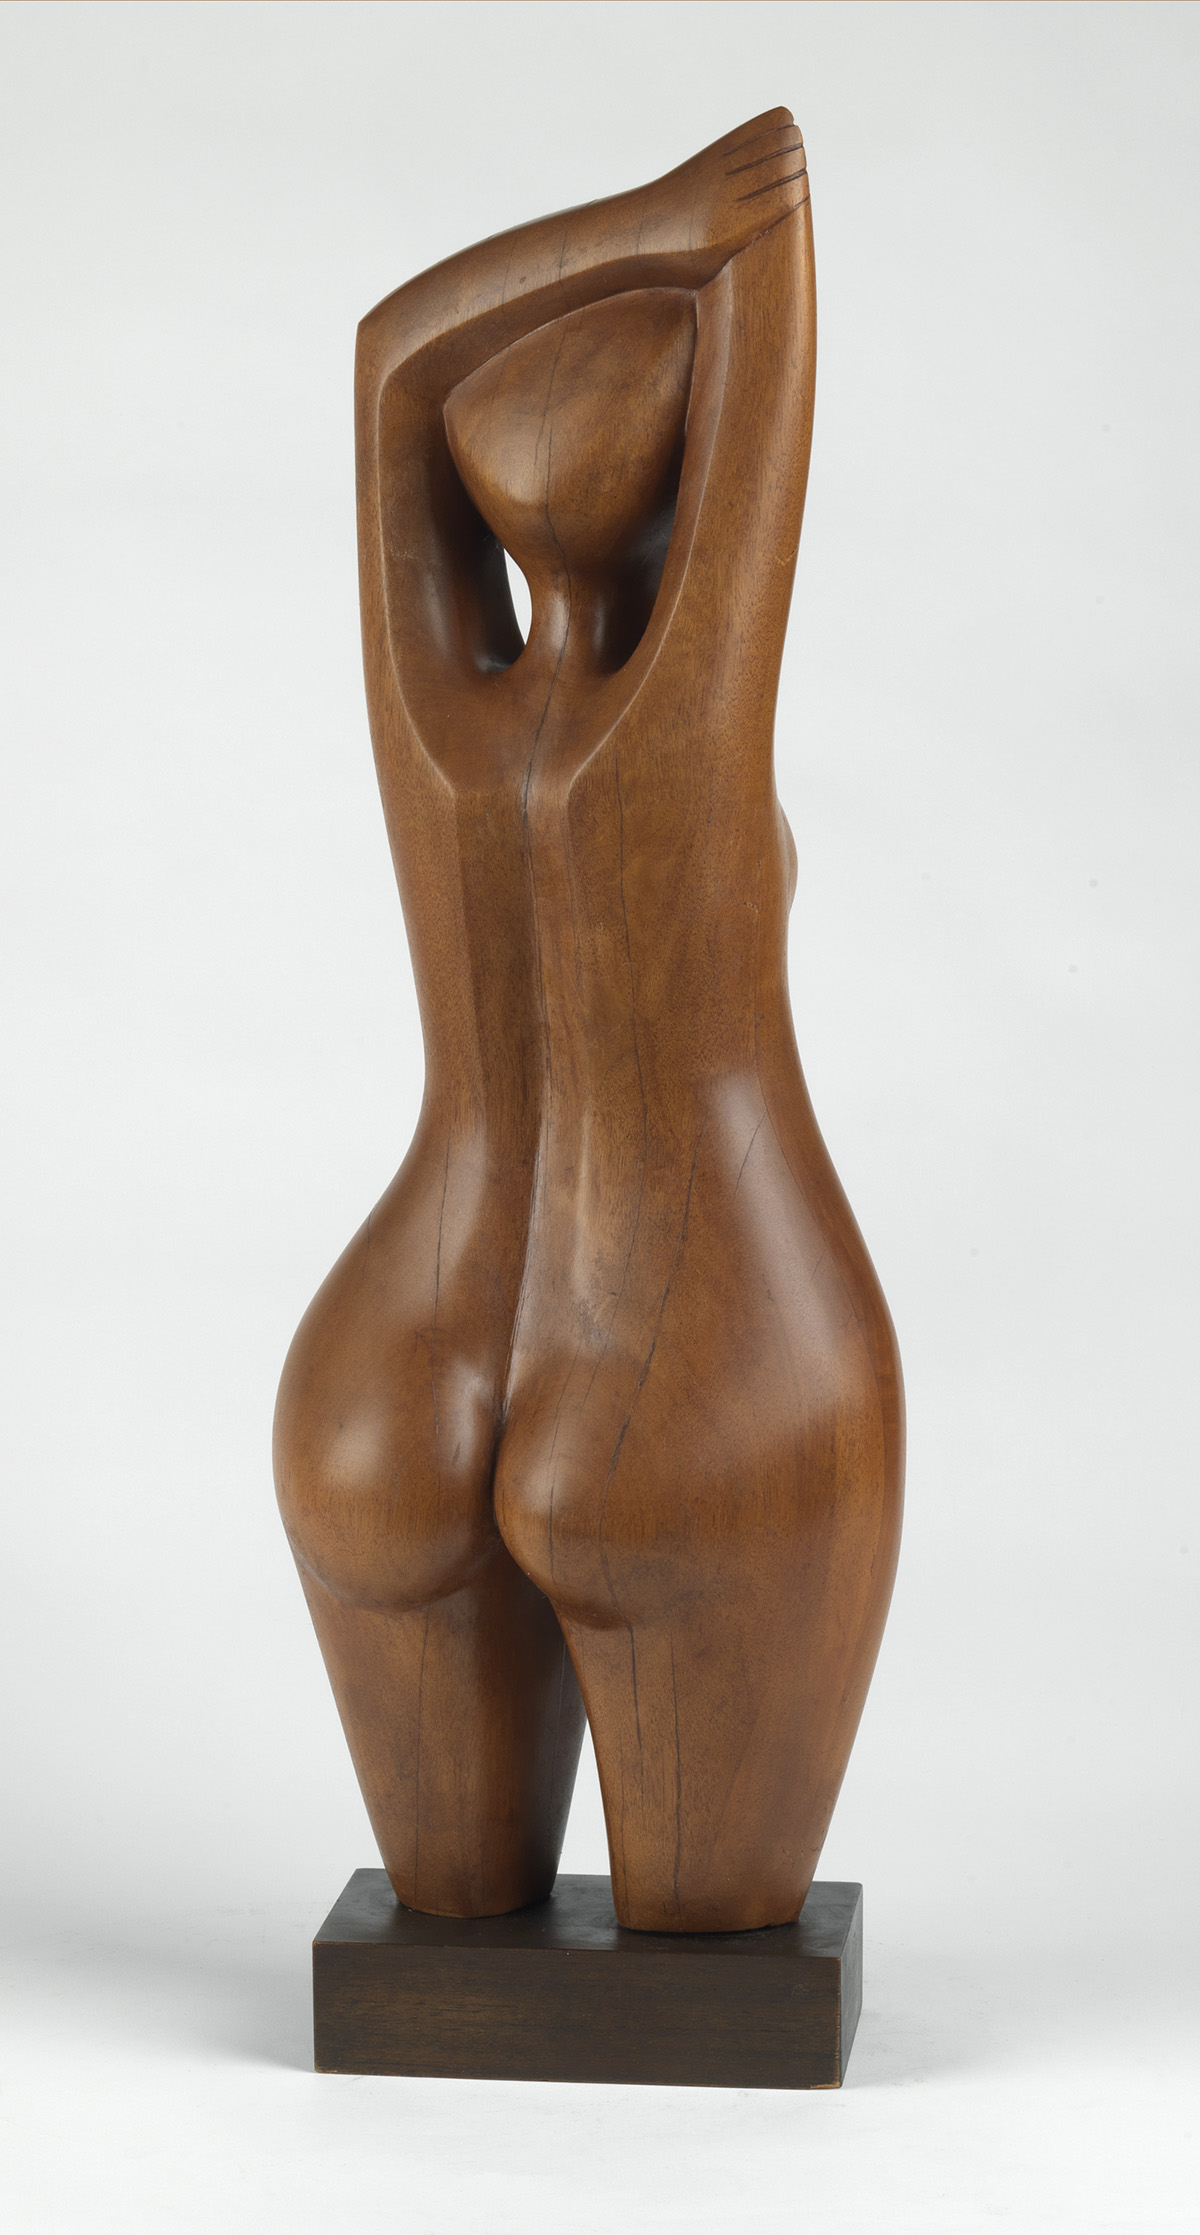 ELIZABETH CATLETT (1915 - 2012) Untitled (Standing Woman).